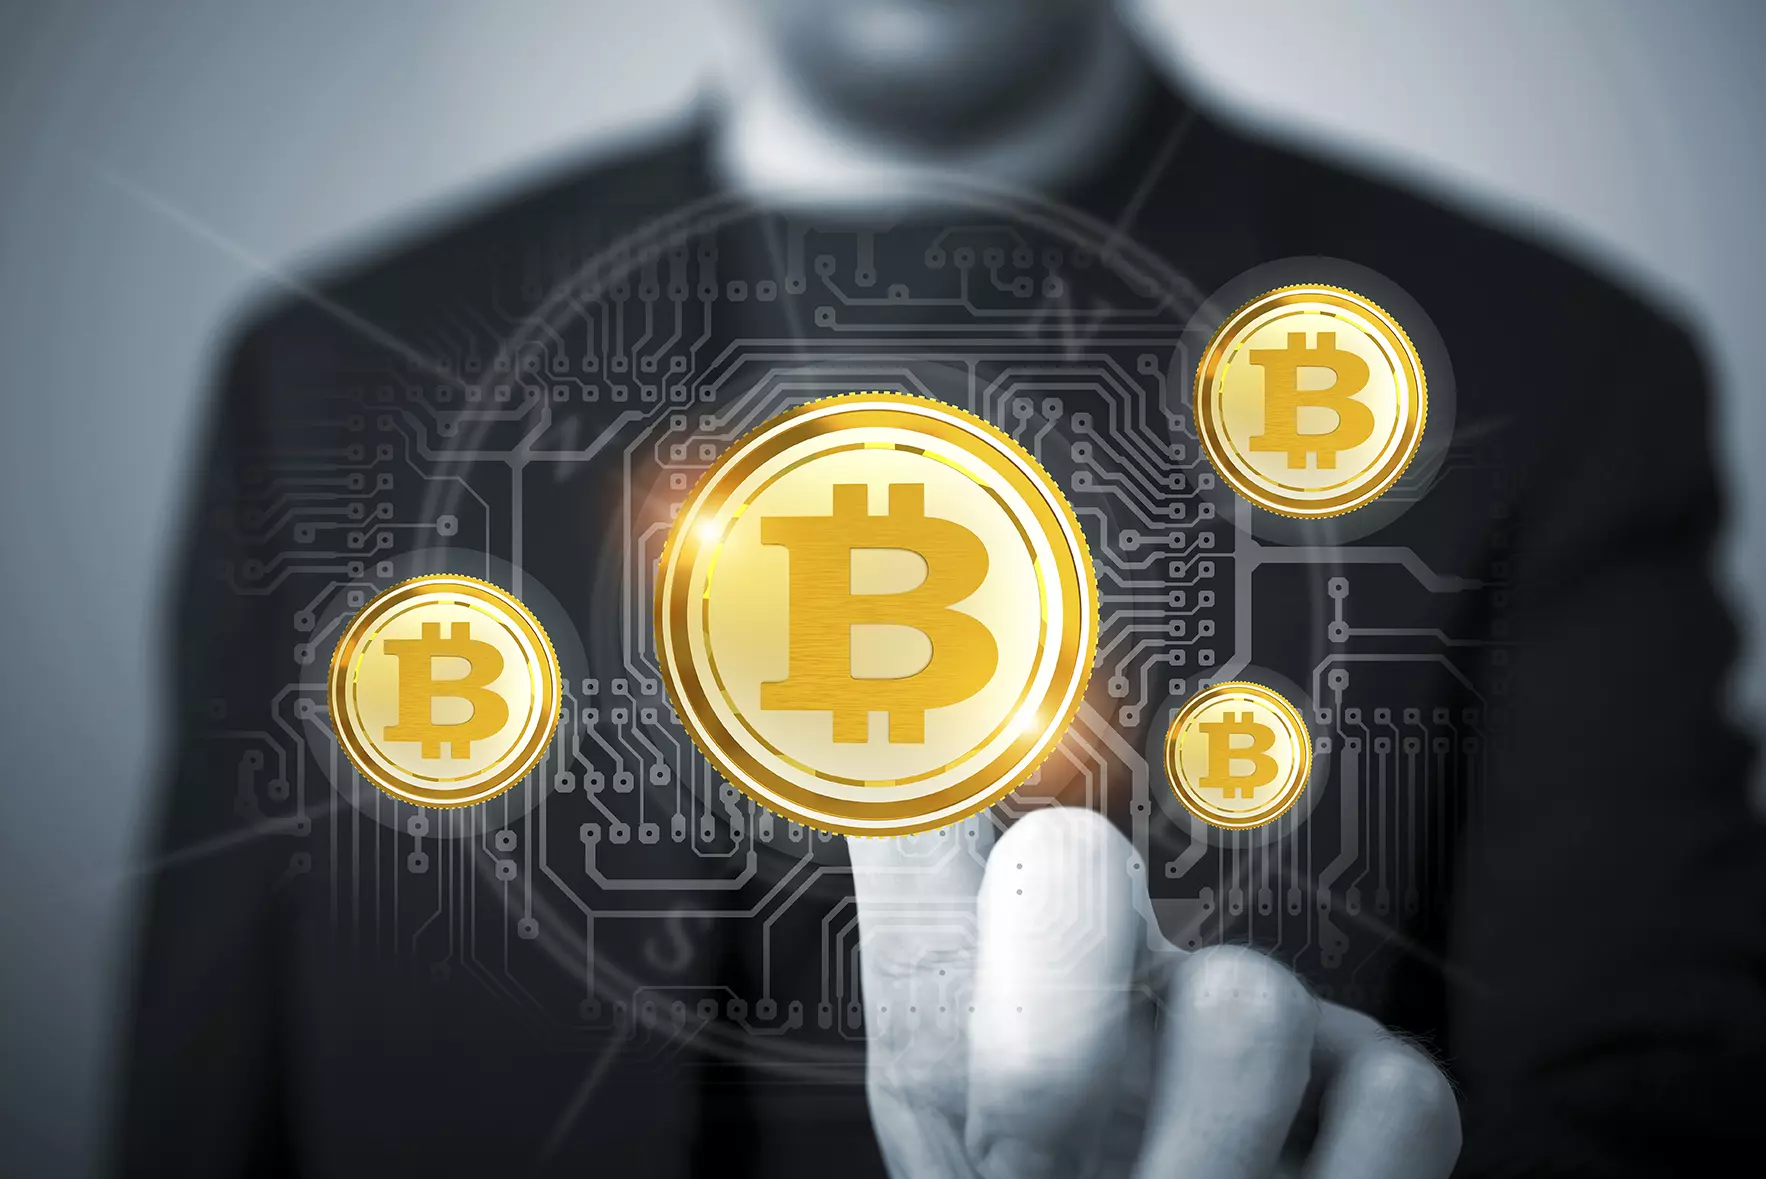 Hombre de fondo tocando monedas digitales de bitcoin representando a la bitcoin que alcanza valor récord.